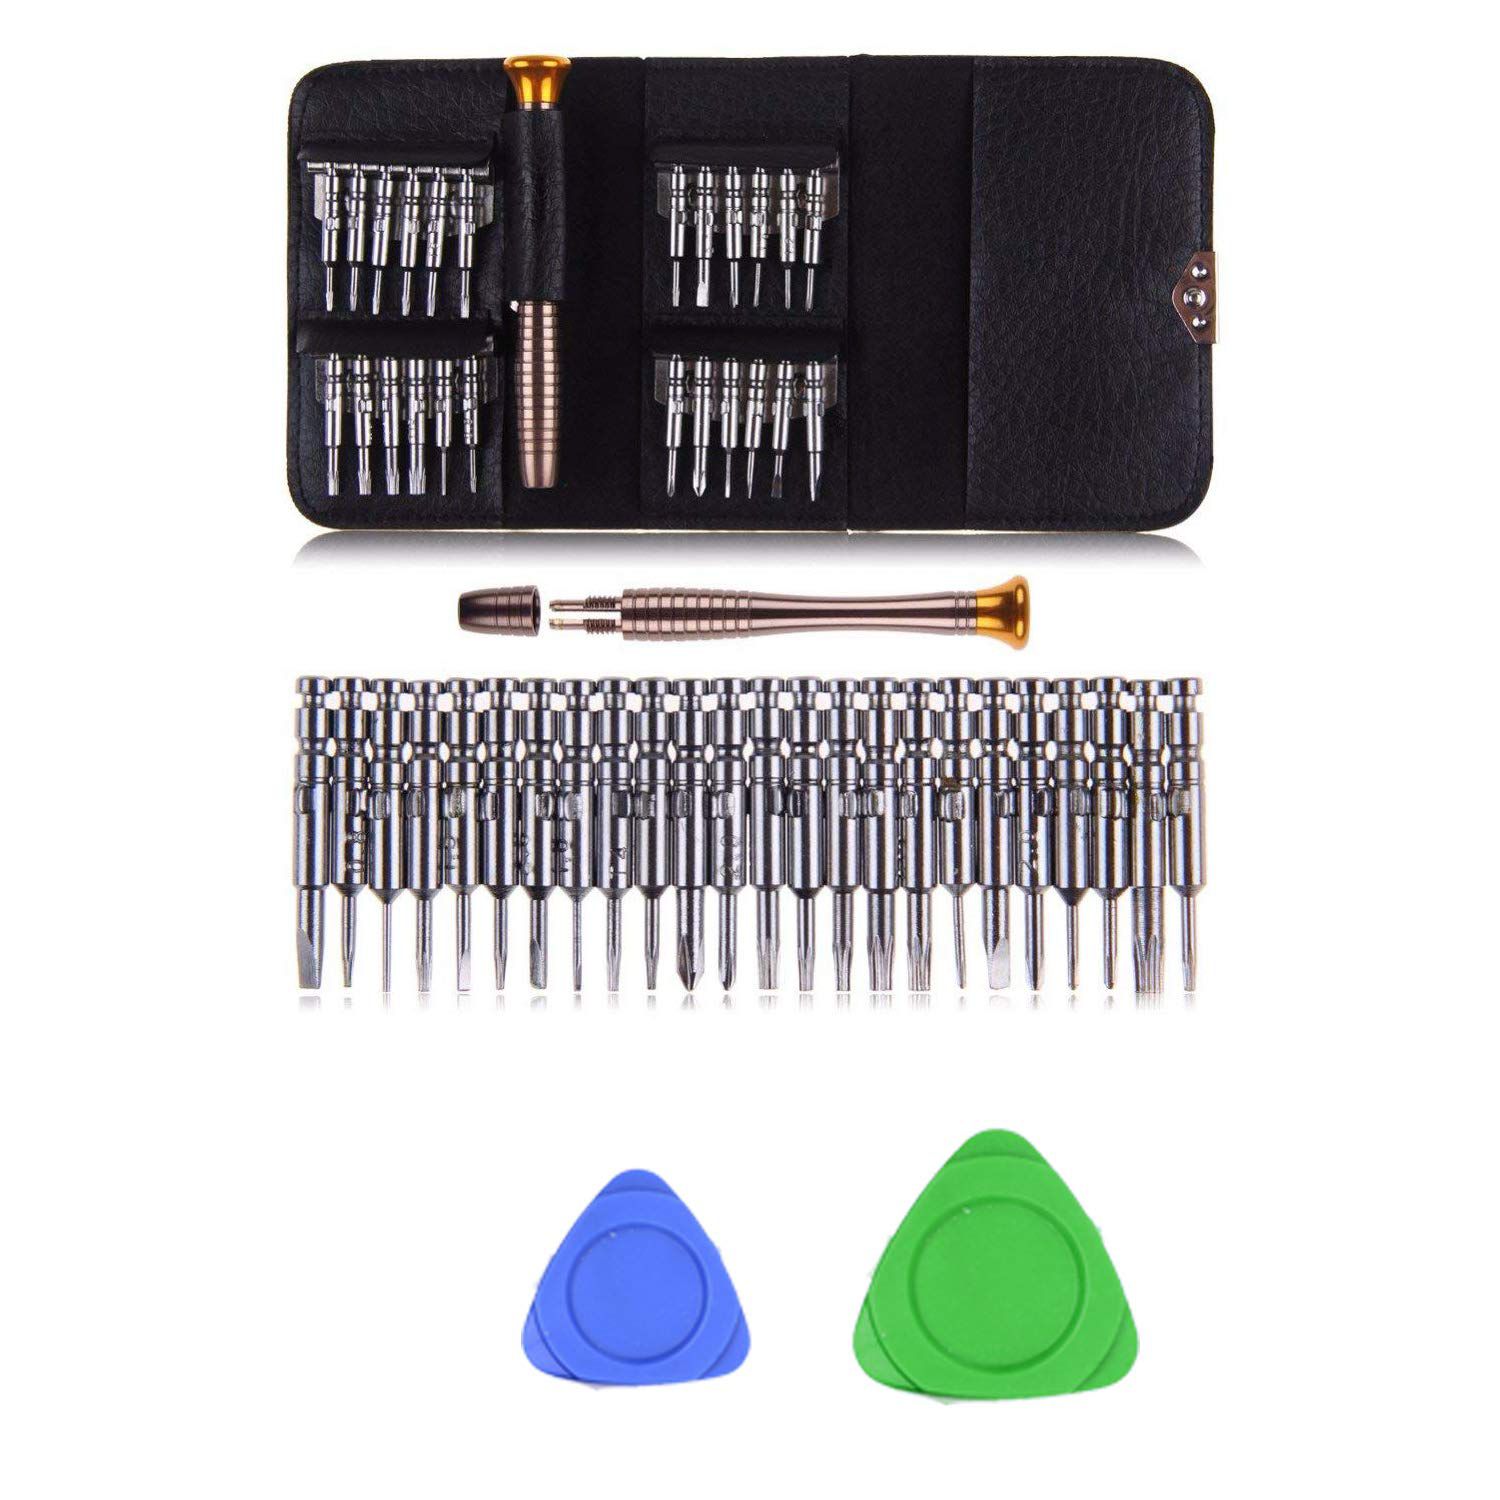 Wallet tool kit 25 in 1 Precision Screwdriver  Multi Pocket Repair set 25 Hand Tool